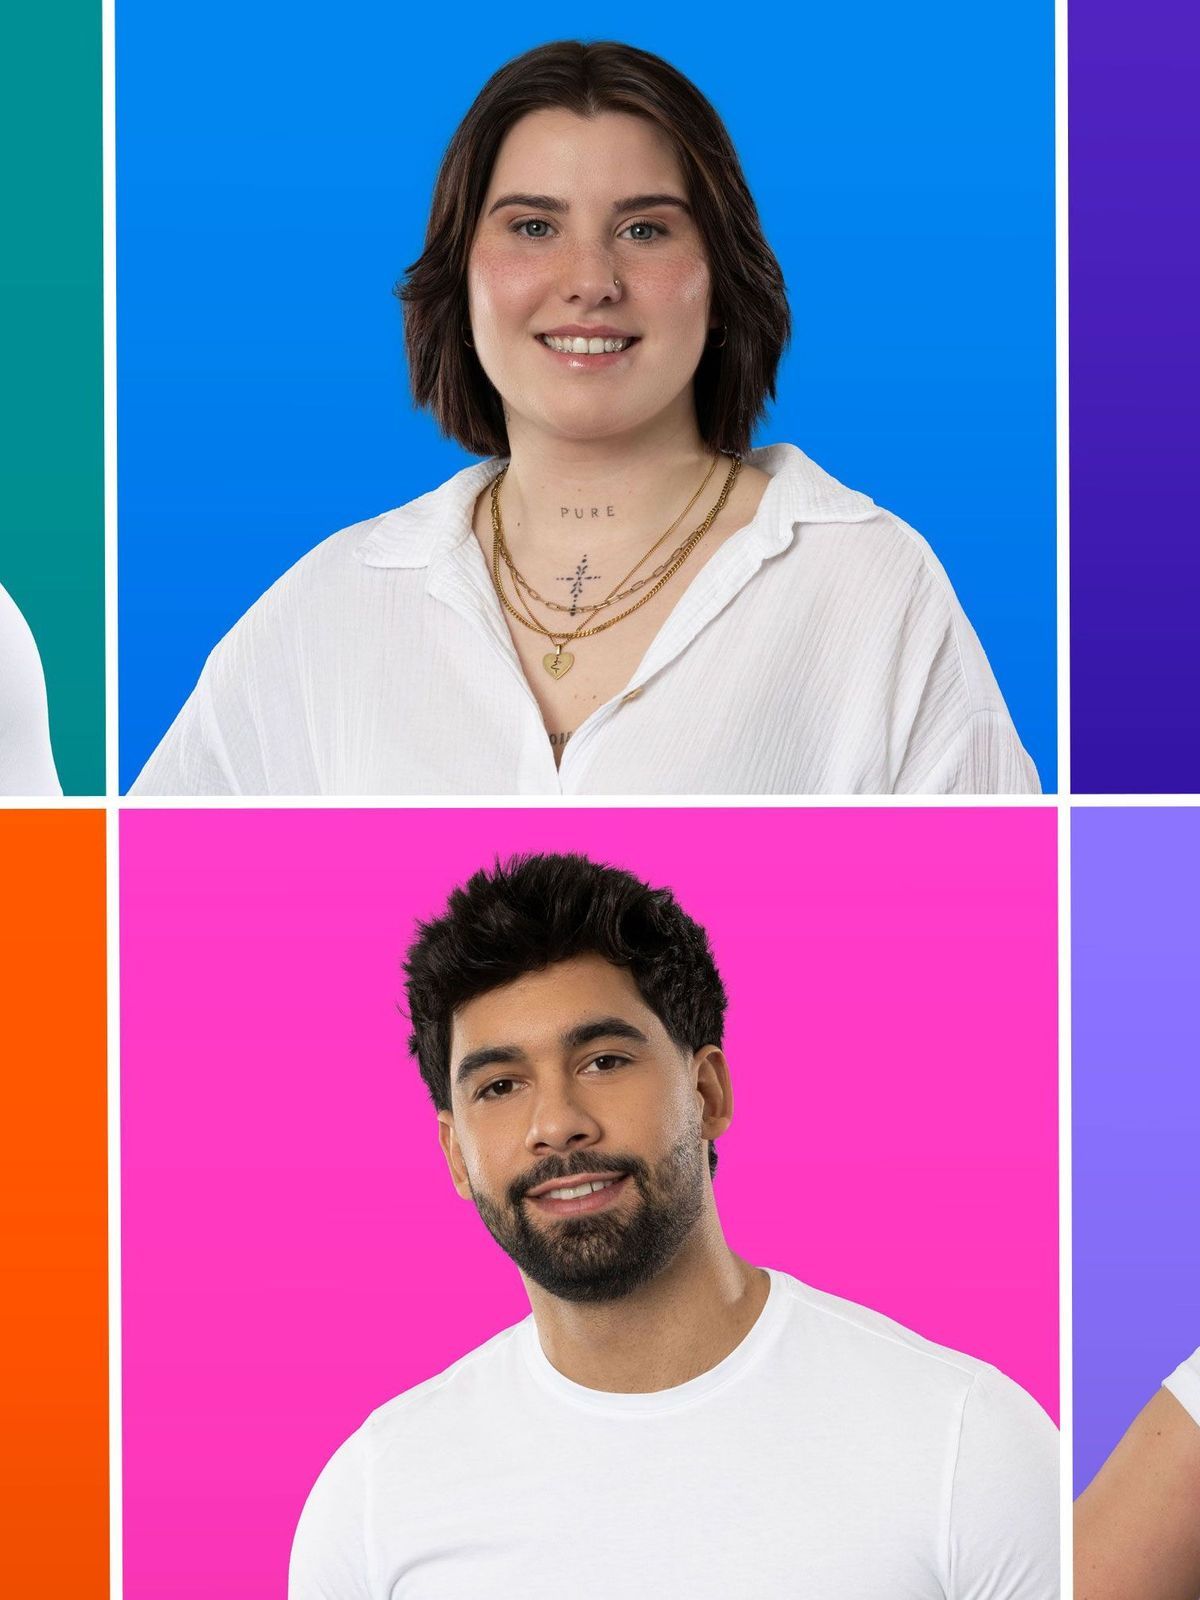 Das sind die Finalist:innen von "Big Brother" 2024: (von oben links nach unten rechts): Mateo, Maja, Marcus, Benedikt, Christian und Frauke